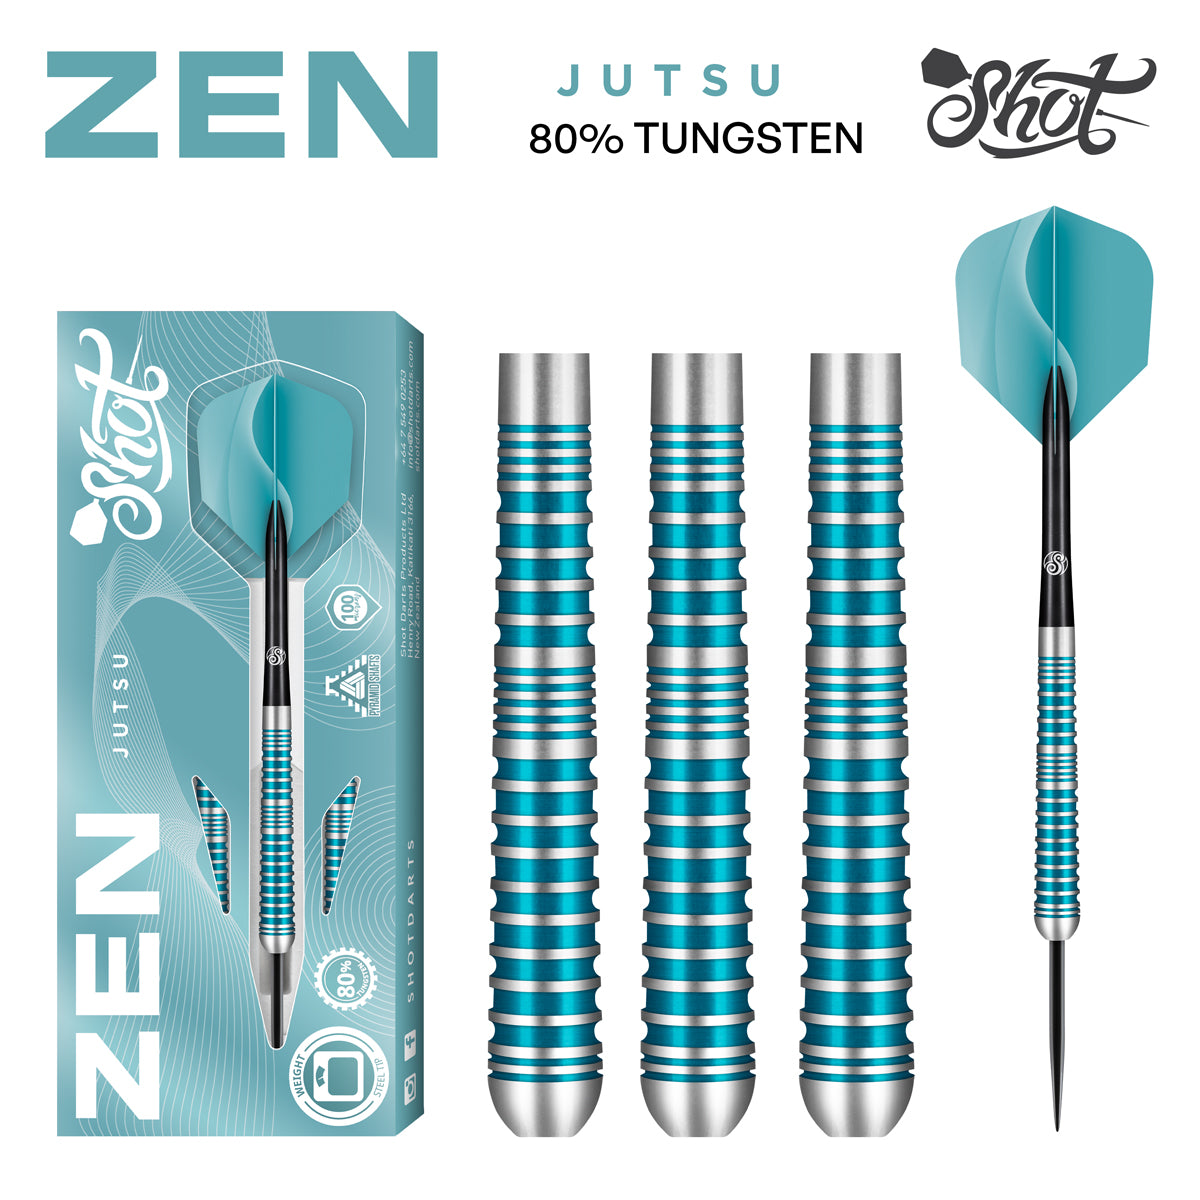 Shot Darts - Zen Jutsu 2.0 - 80% Tungsten - 23g